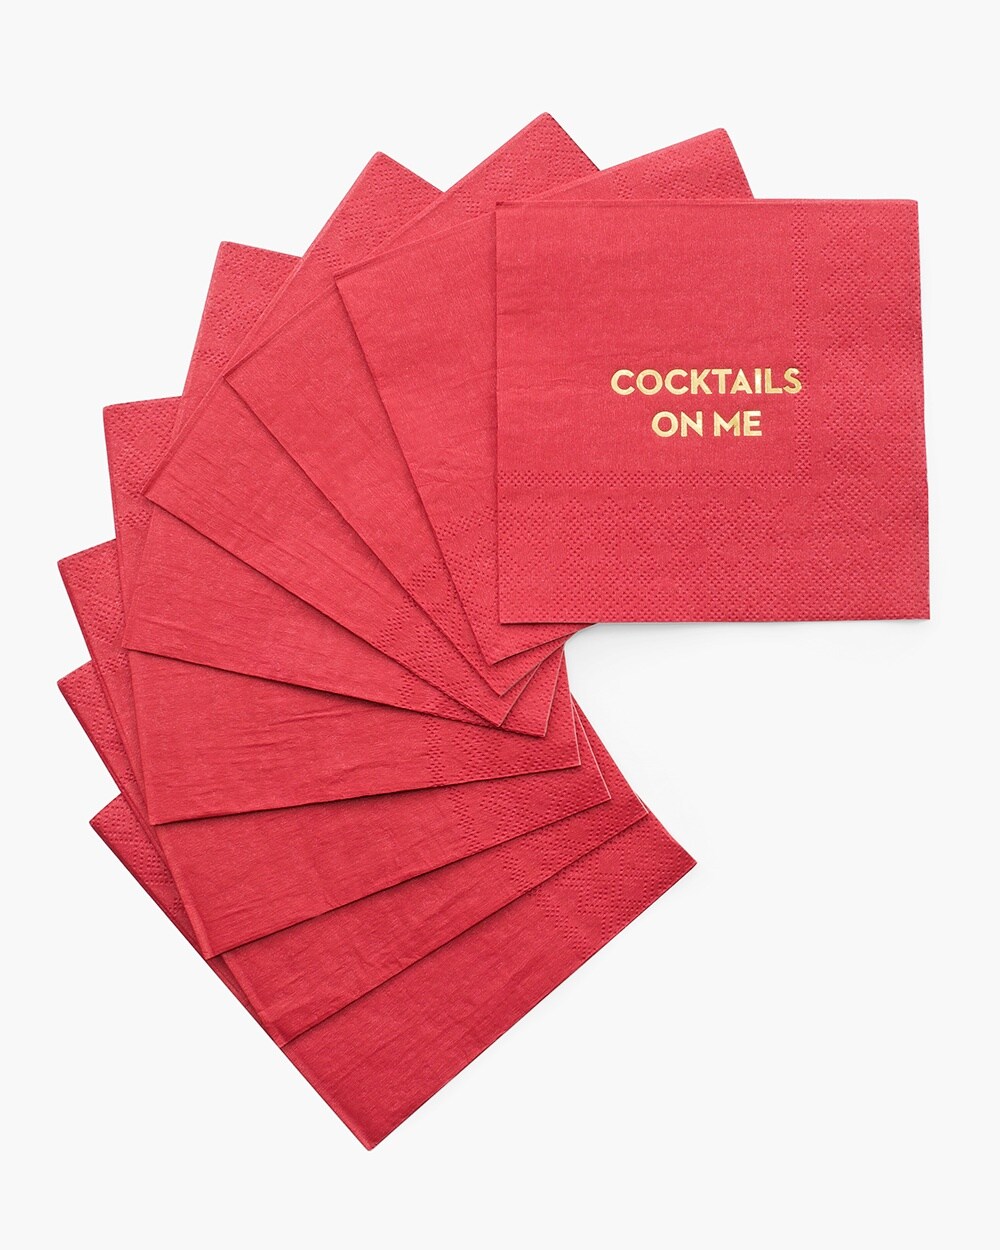 Cocktails on Me Napkin Set